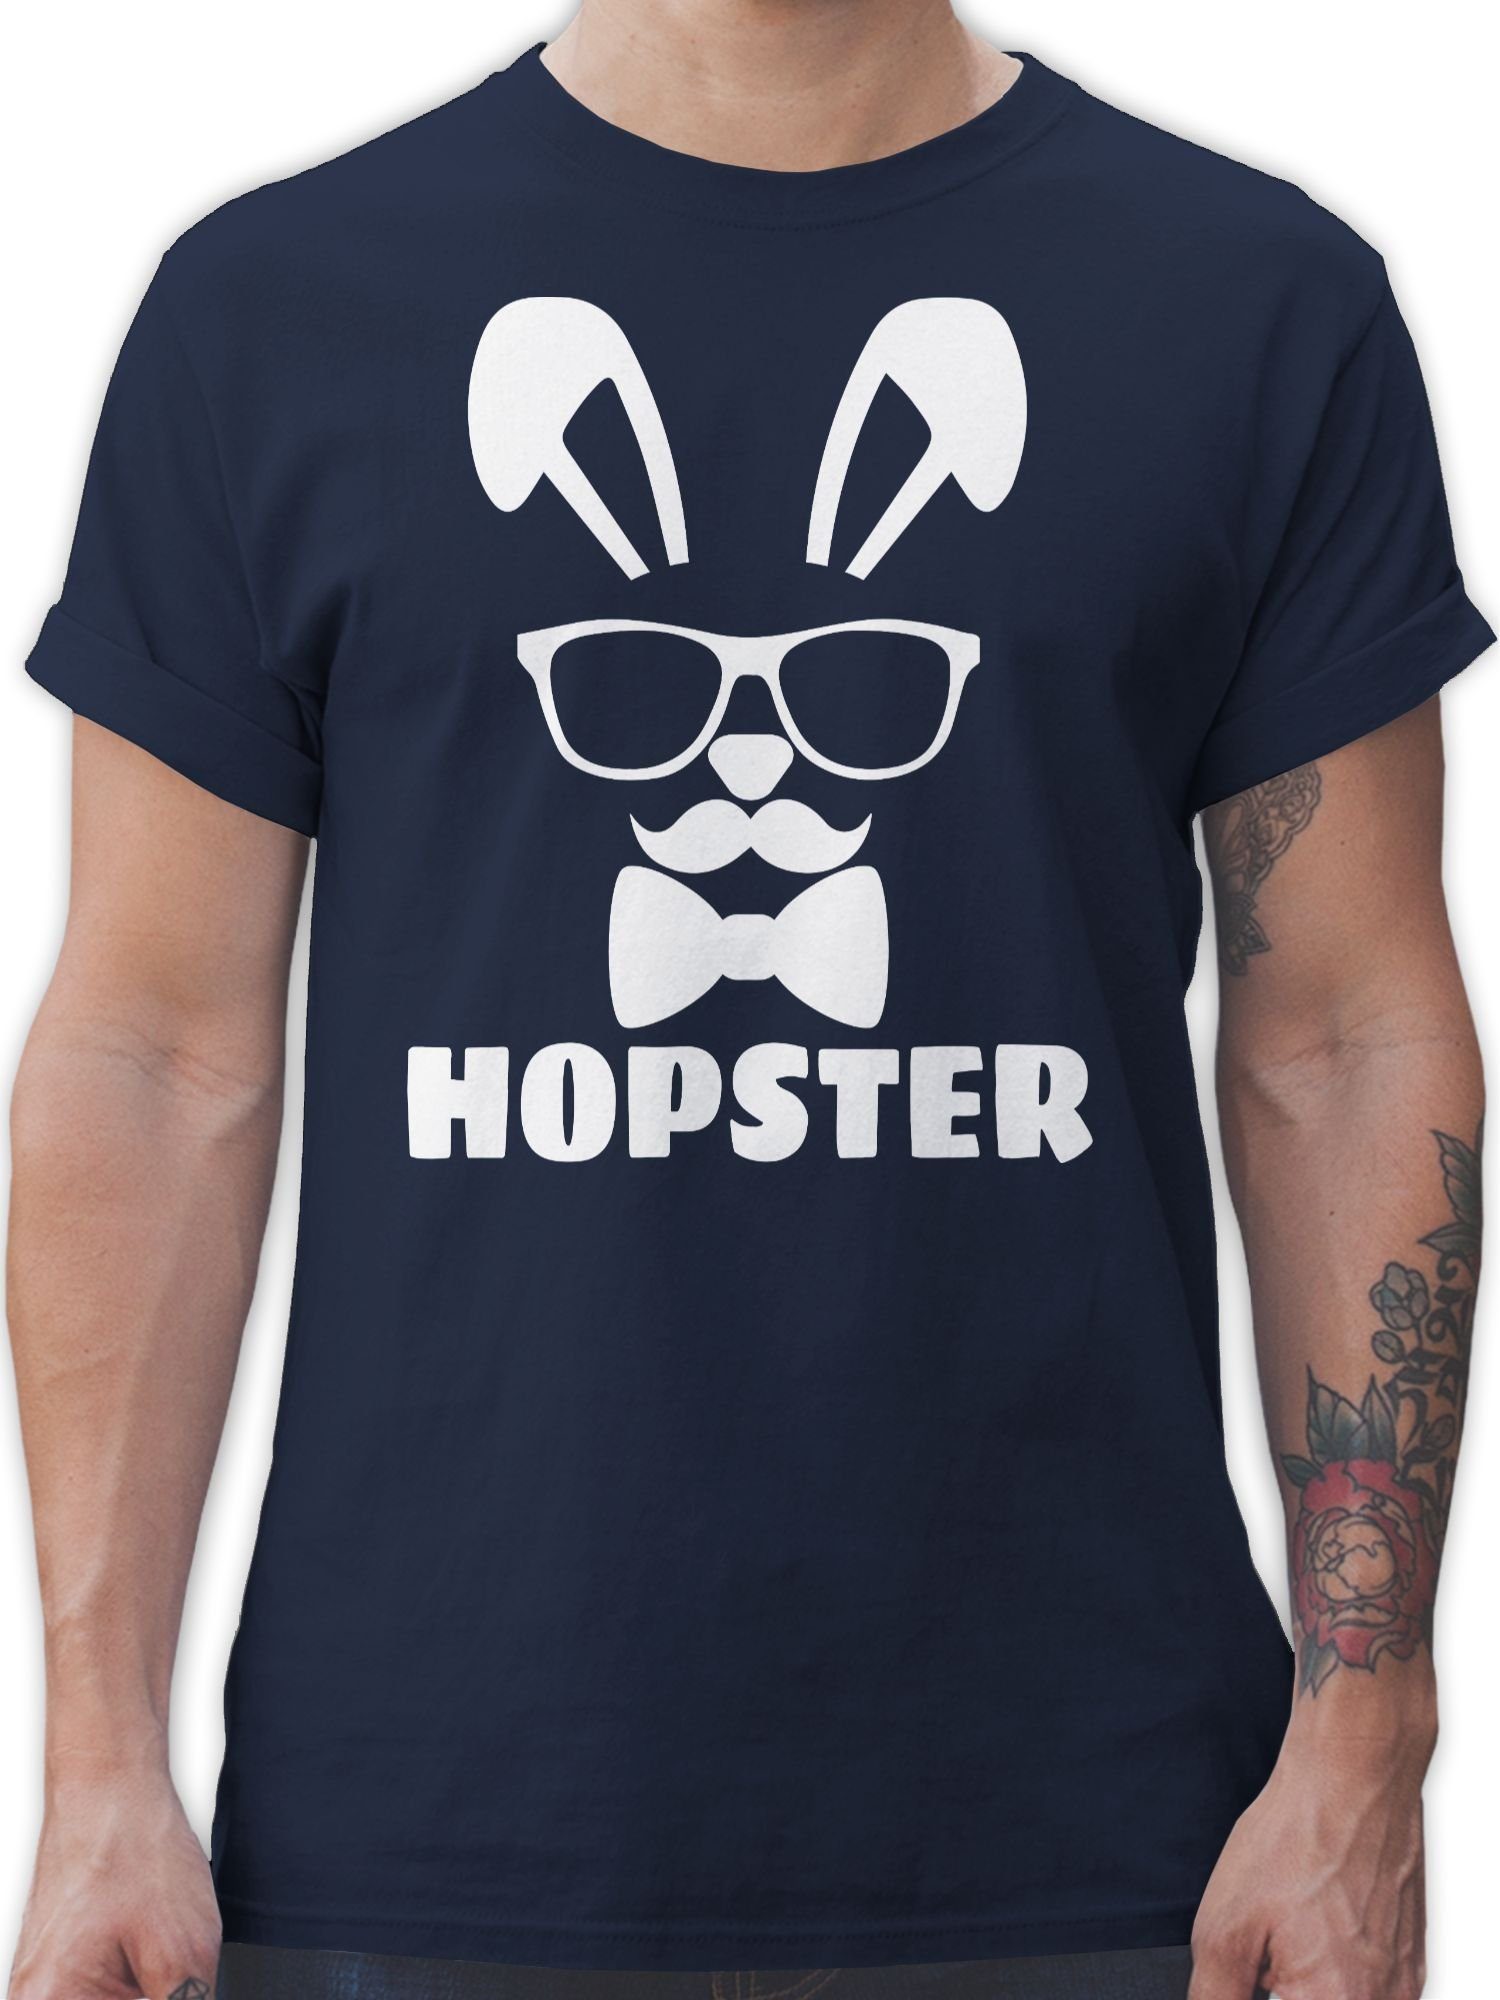 Shirtracer T-Shirt Hopster - weiß - Ostergeschenke - Herren Premium T-Shirt oder mit Osterhasen, Geschenke für Partner zu Ostern, kleine Ostergeschenke als Oster - Kleinigkeit 5 Navy Blau